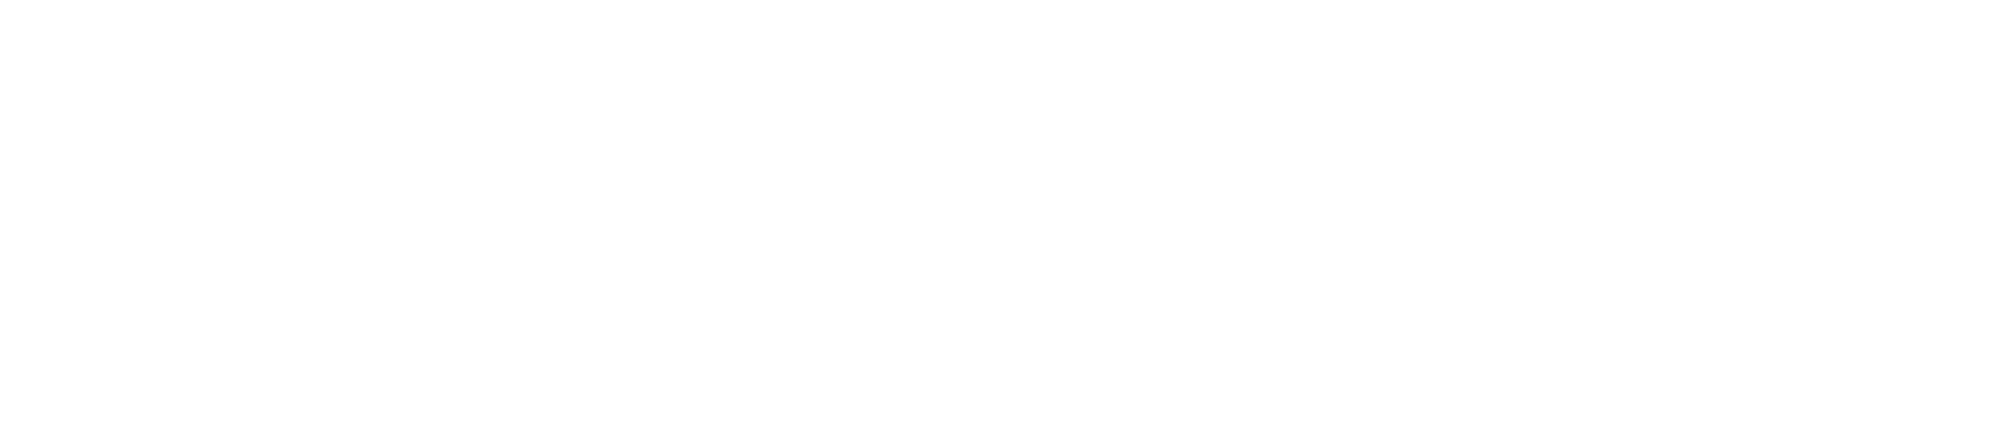 No1 NOSTALGIQUE DEAUVILLE Plage de Deauville AUTUMNWINTER COLLECTION 2019-2020